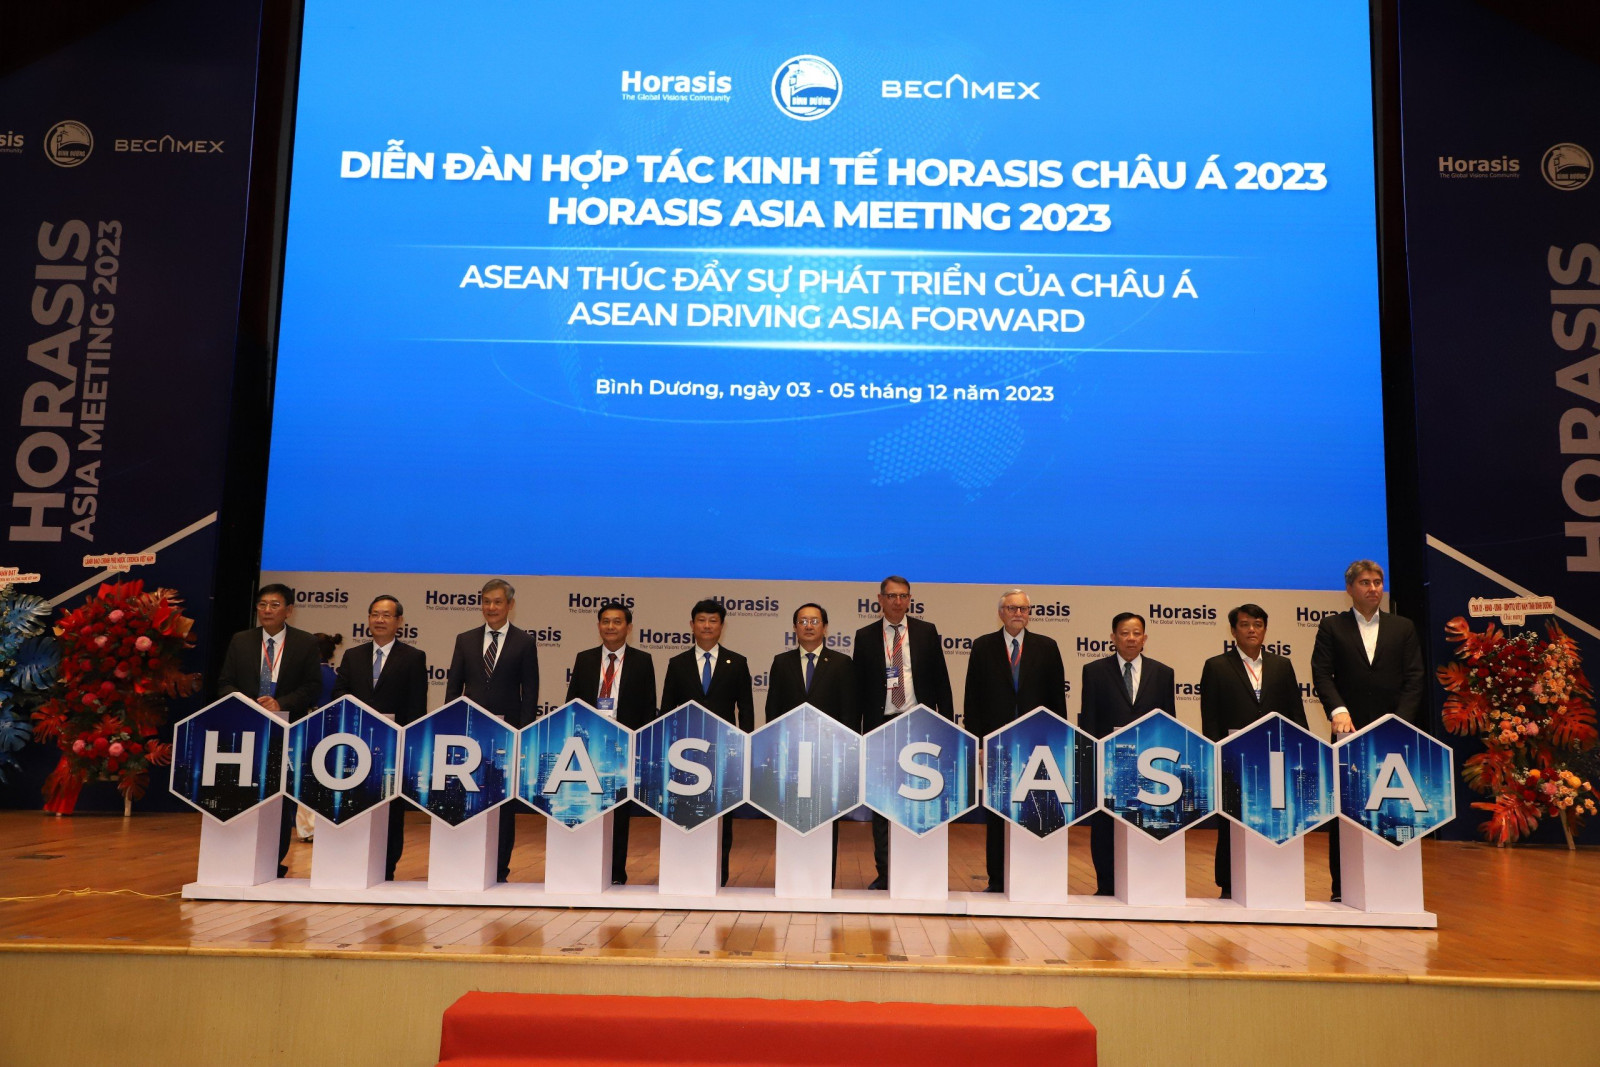 Đại biểu thực hiện nghi thức khai mạc Diễn đàn hợp tác kinh tế Horasis Châu Á 2023.